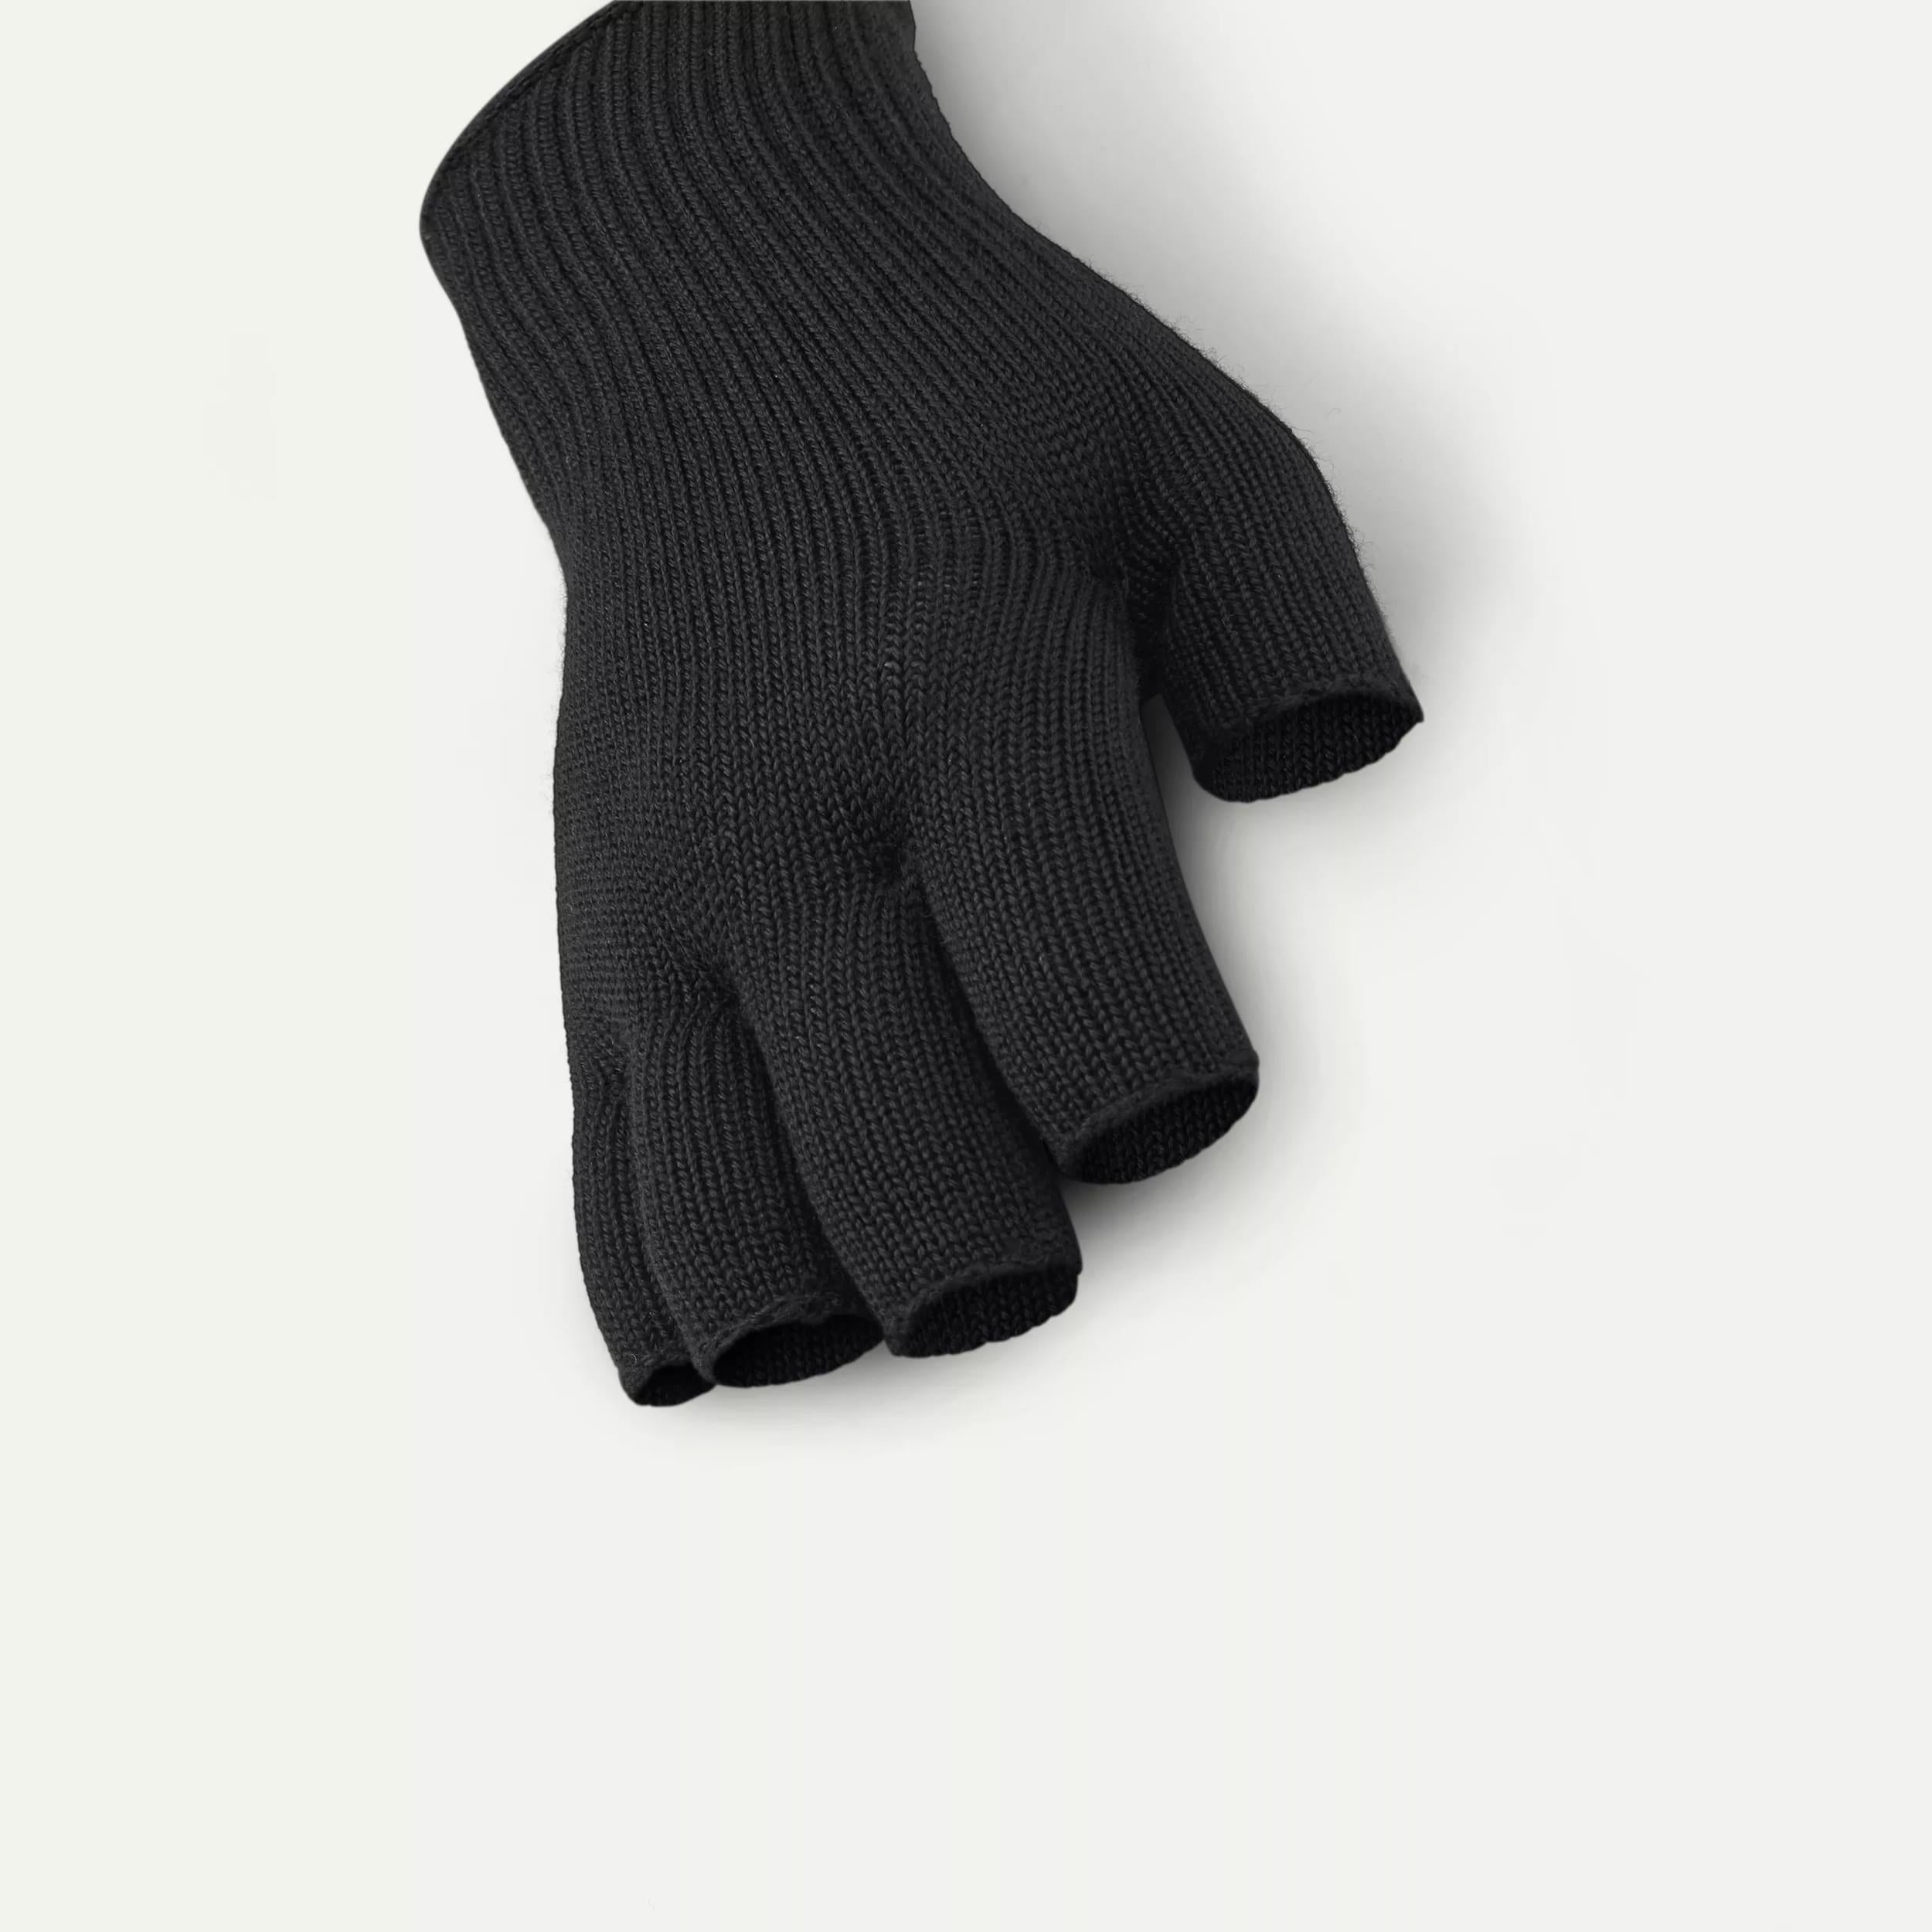 Welney - Solo Fingerless Merino Liner Glove